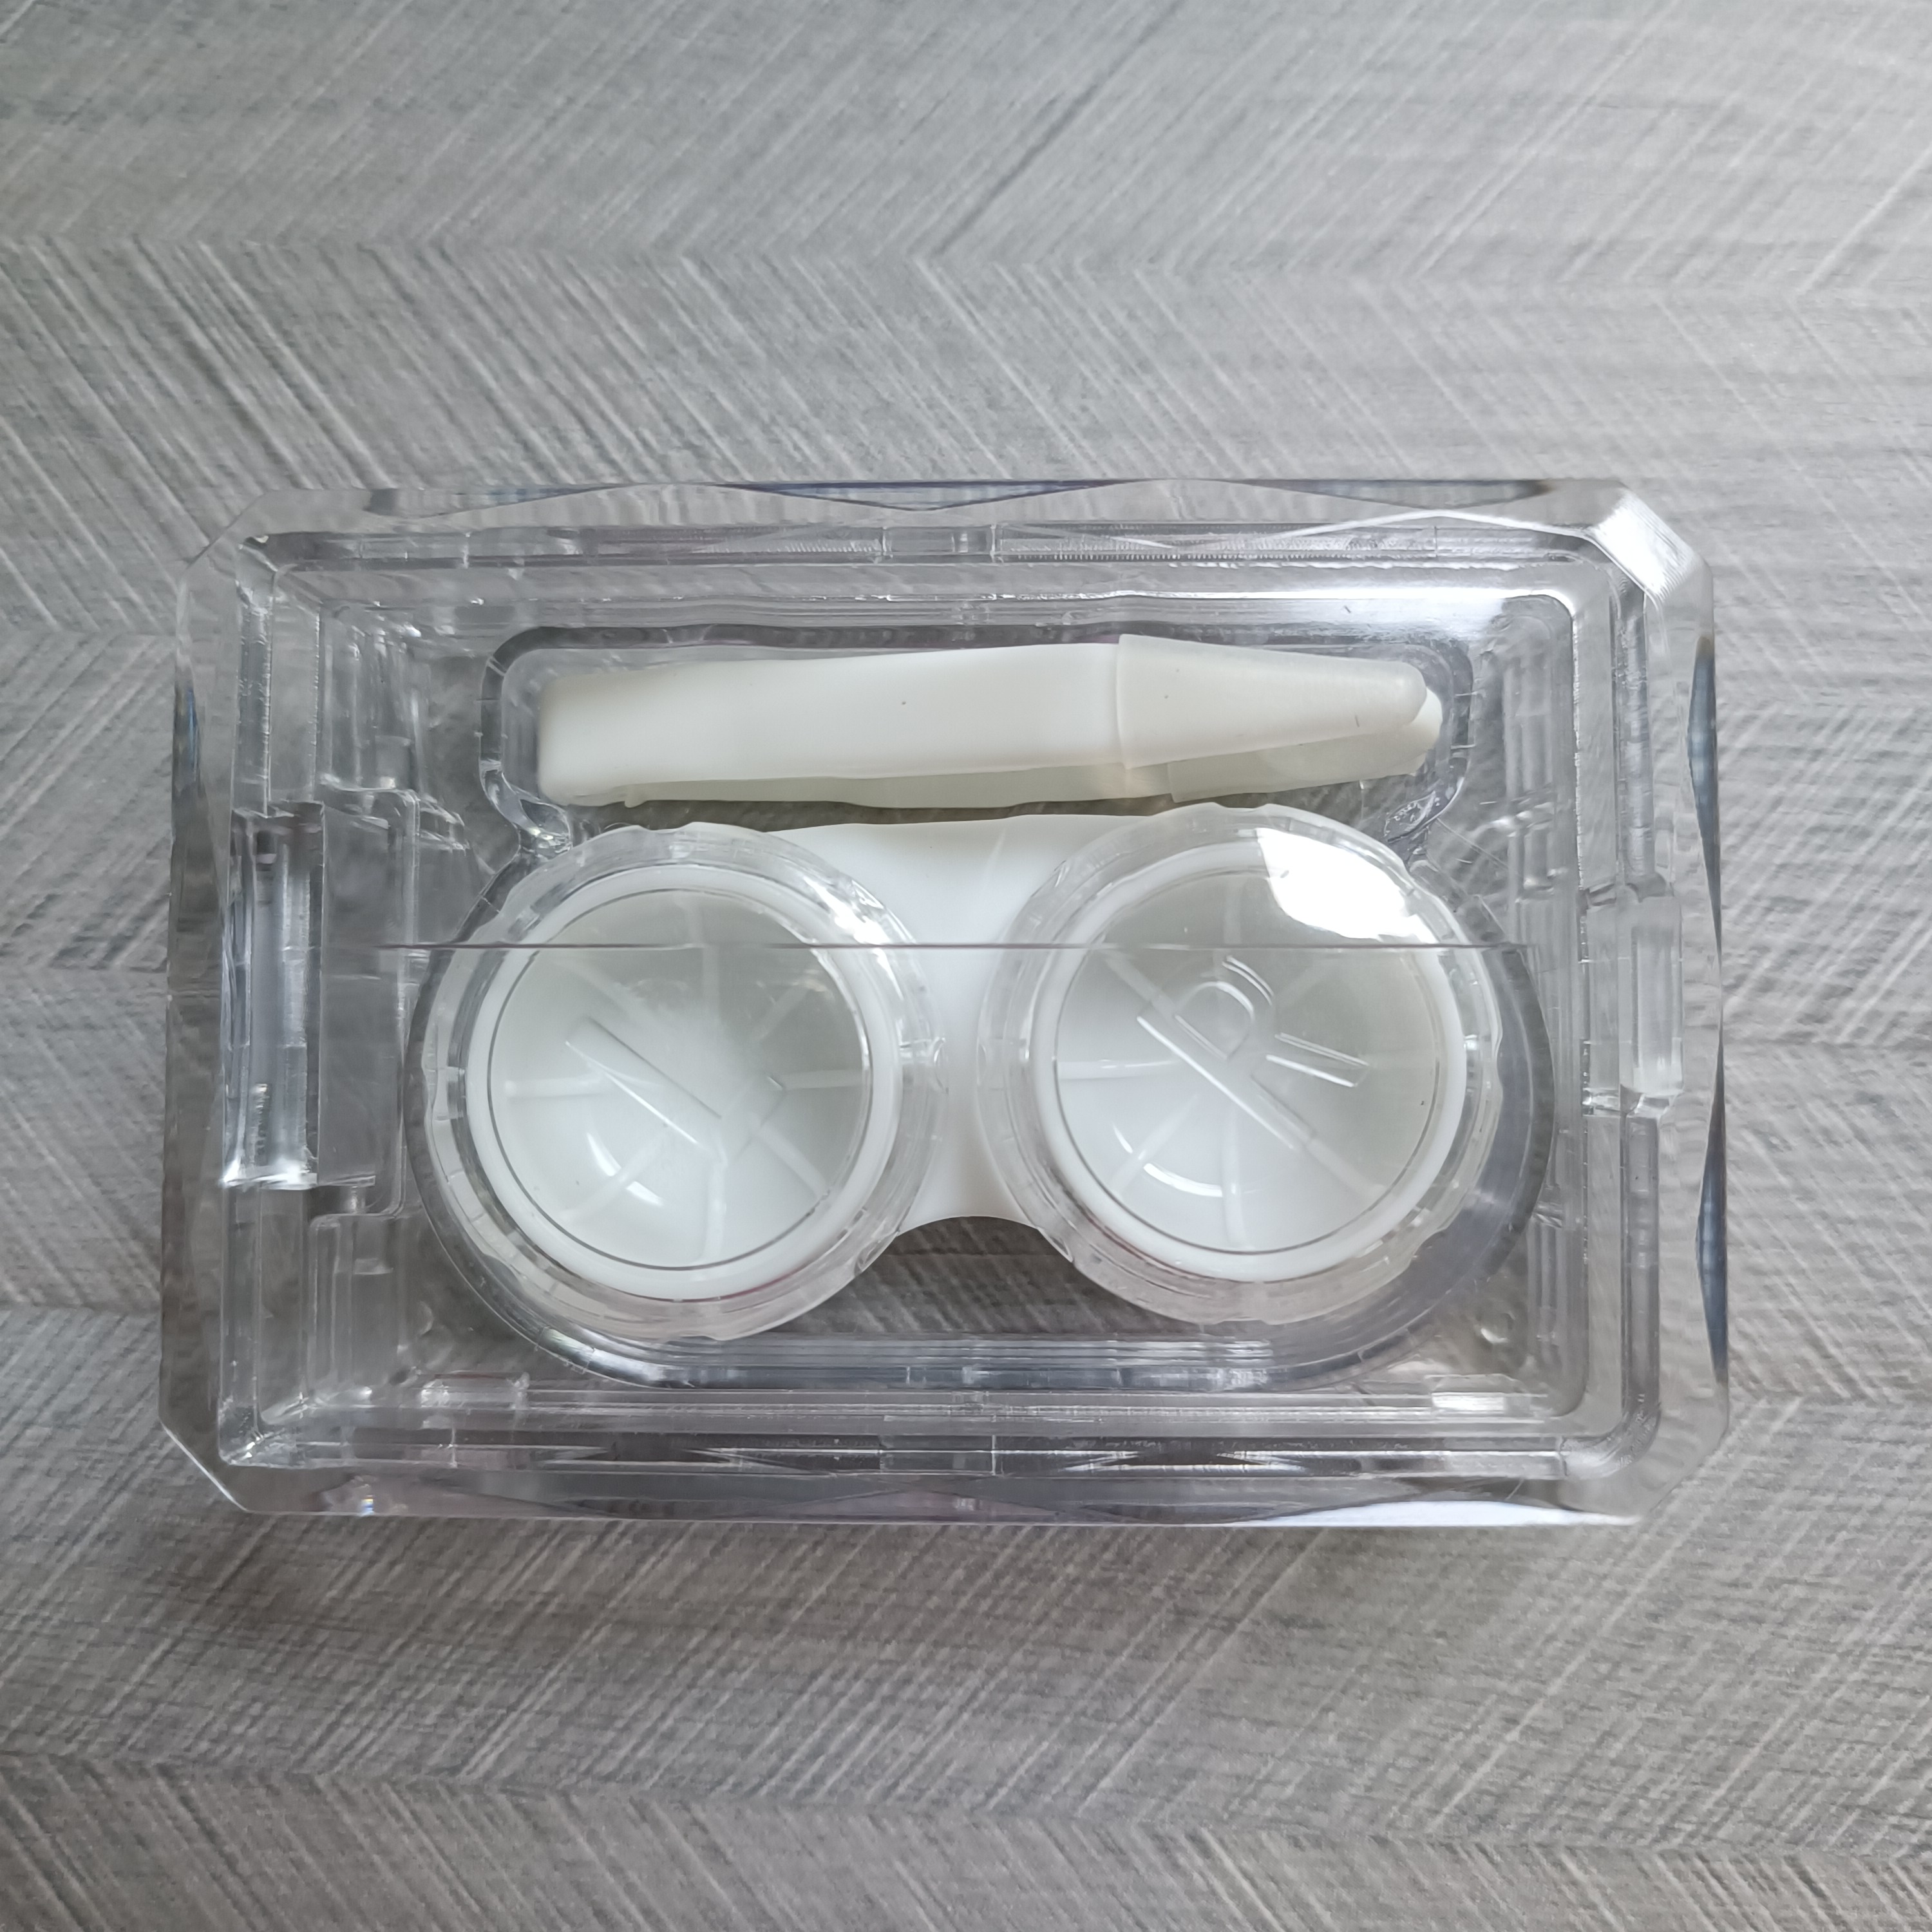 Contact lens case